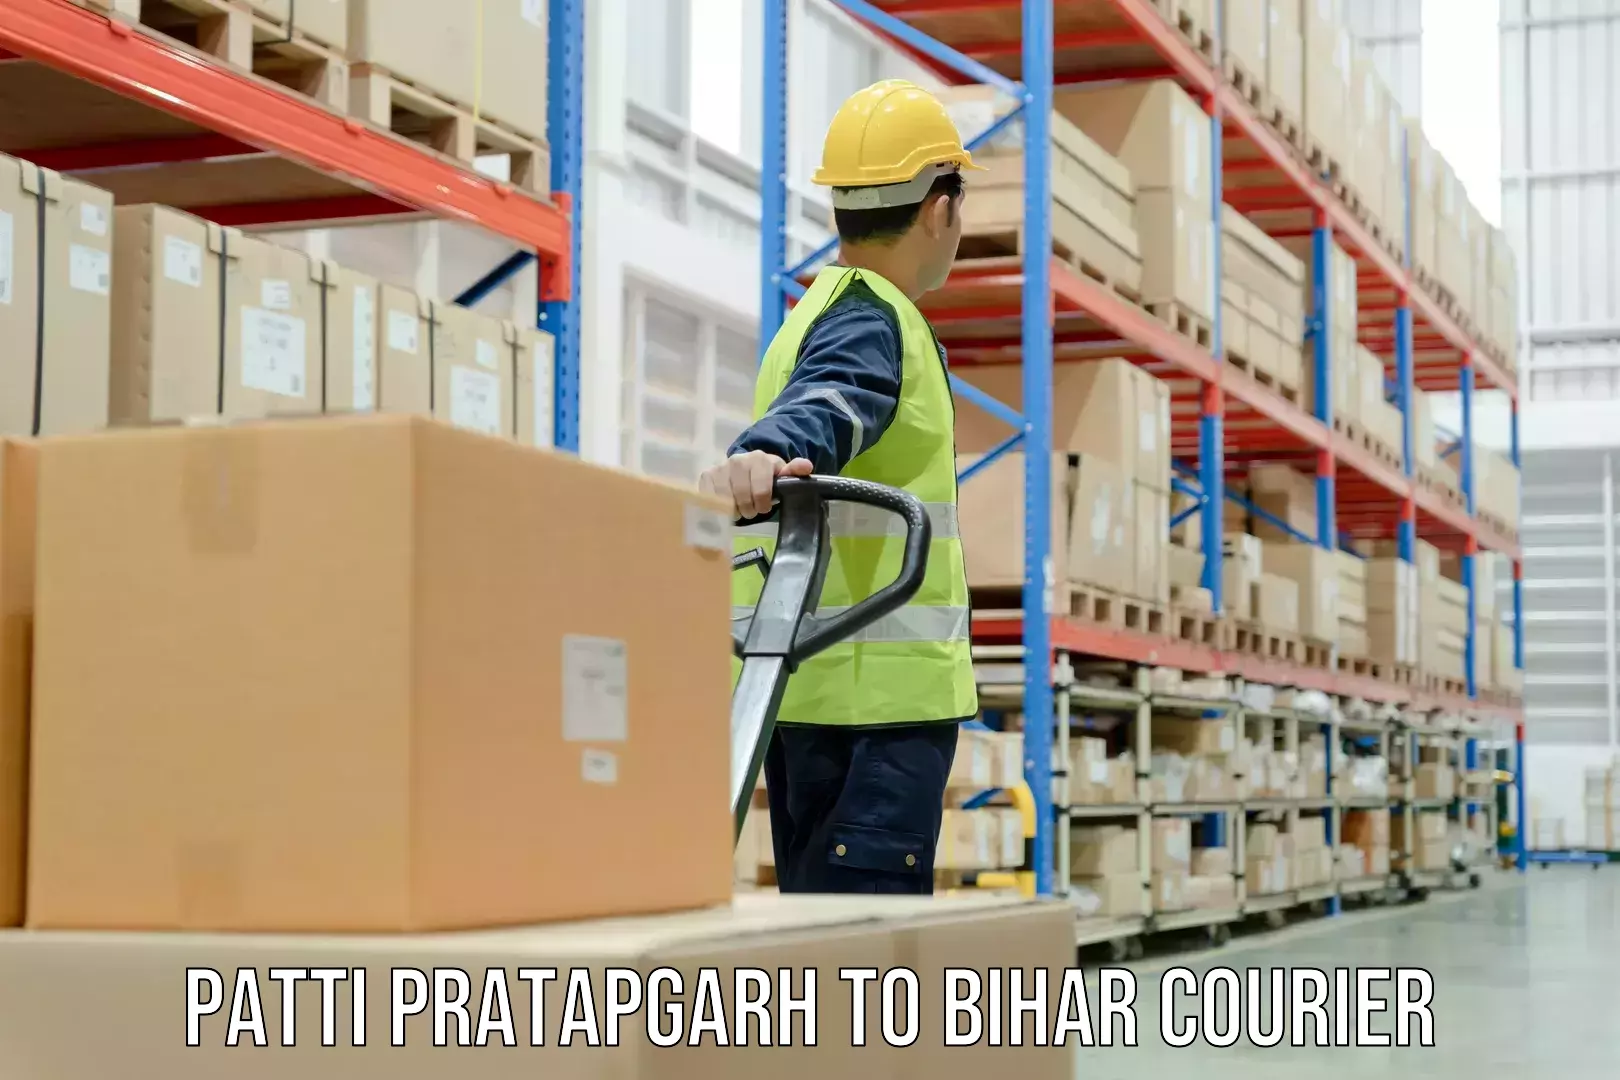 Enhanced shipping experience Patti Pratapgarh to Phulparas